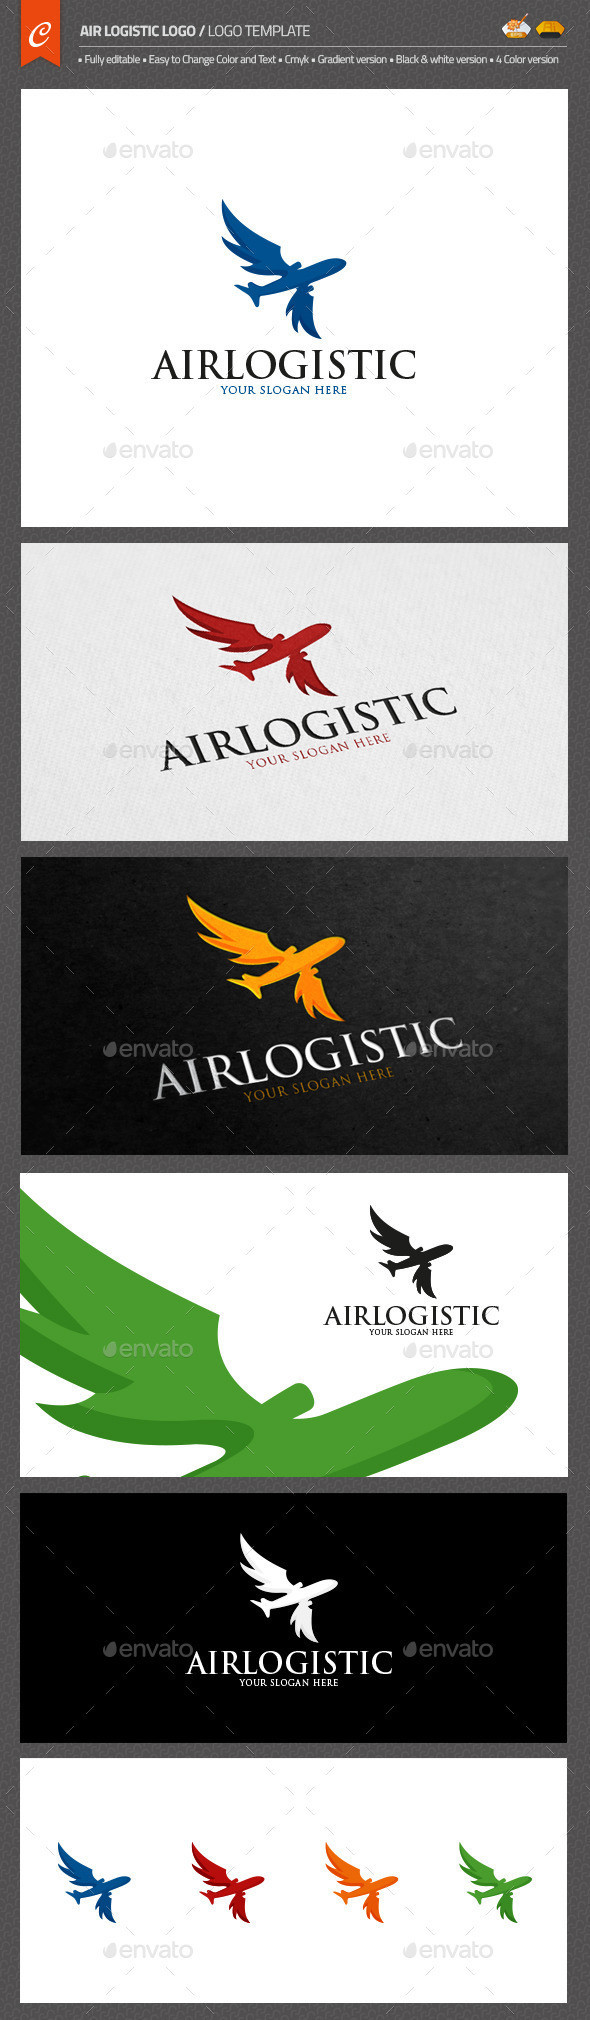 Air logistic logo